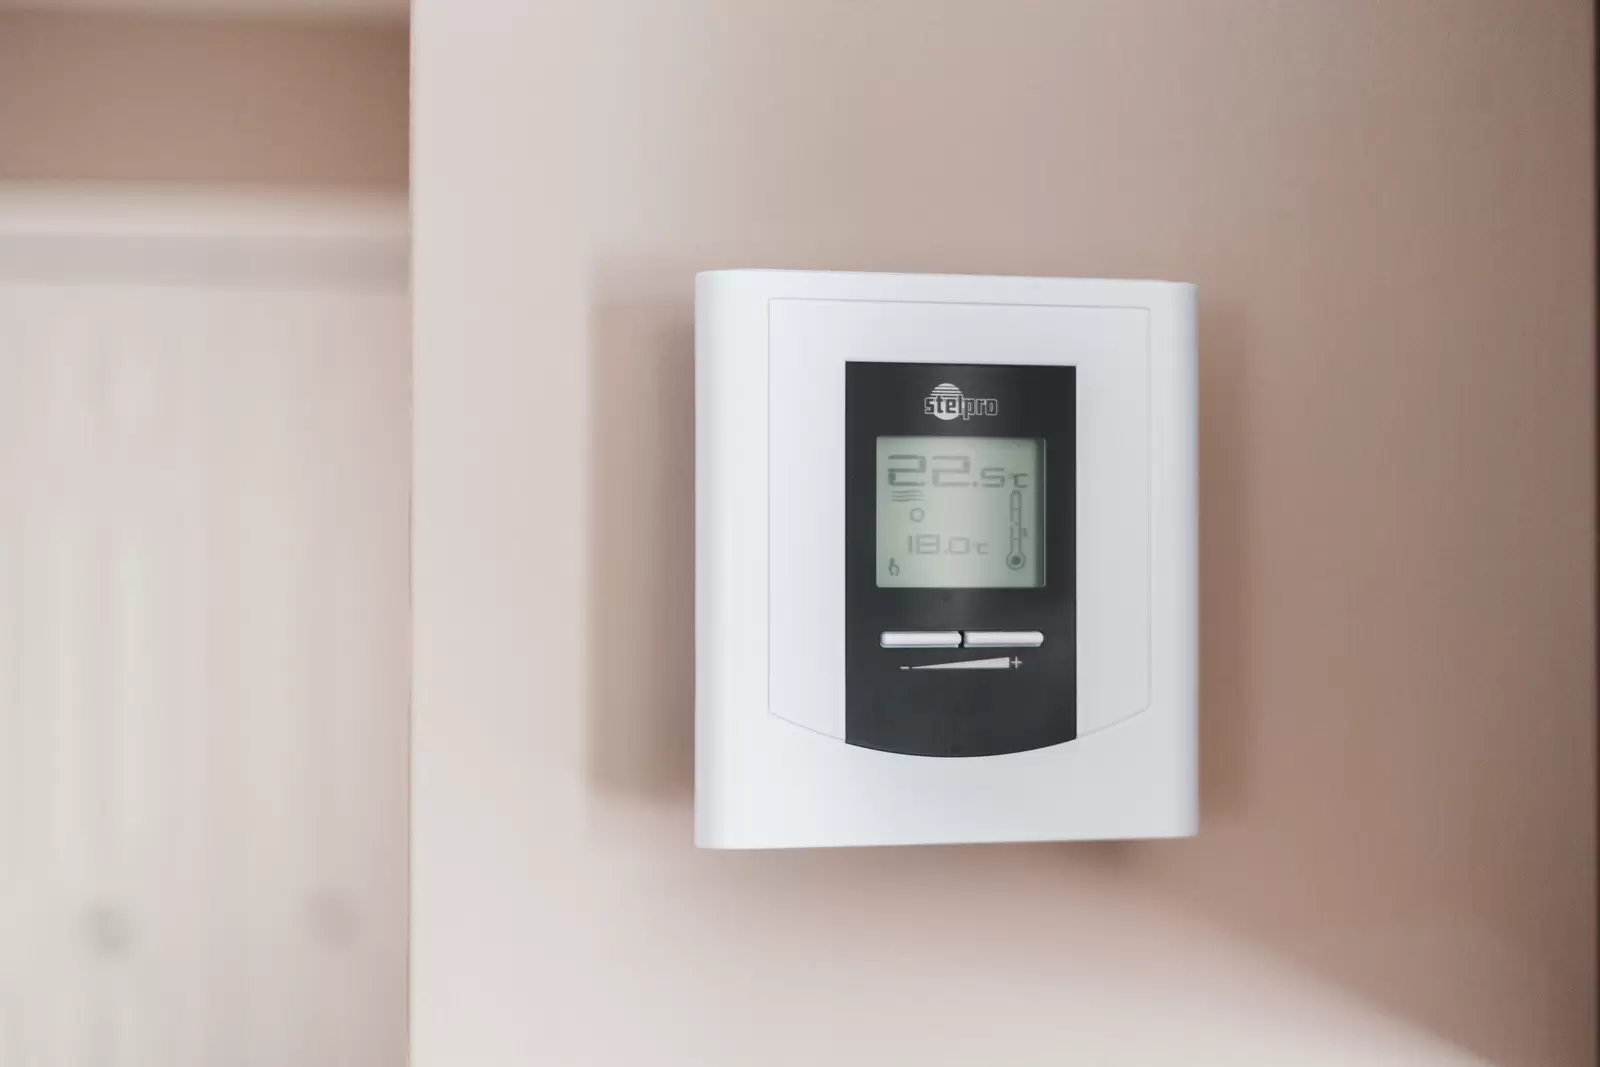 [Étude] Un thermostat d'ambiance permettrait d'économiser 170 € sur une facture énergétique